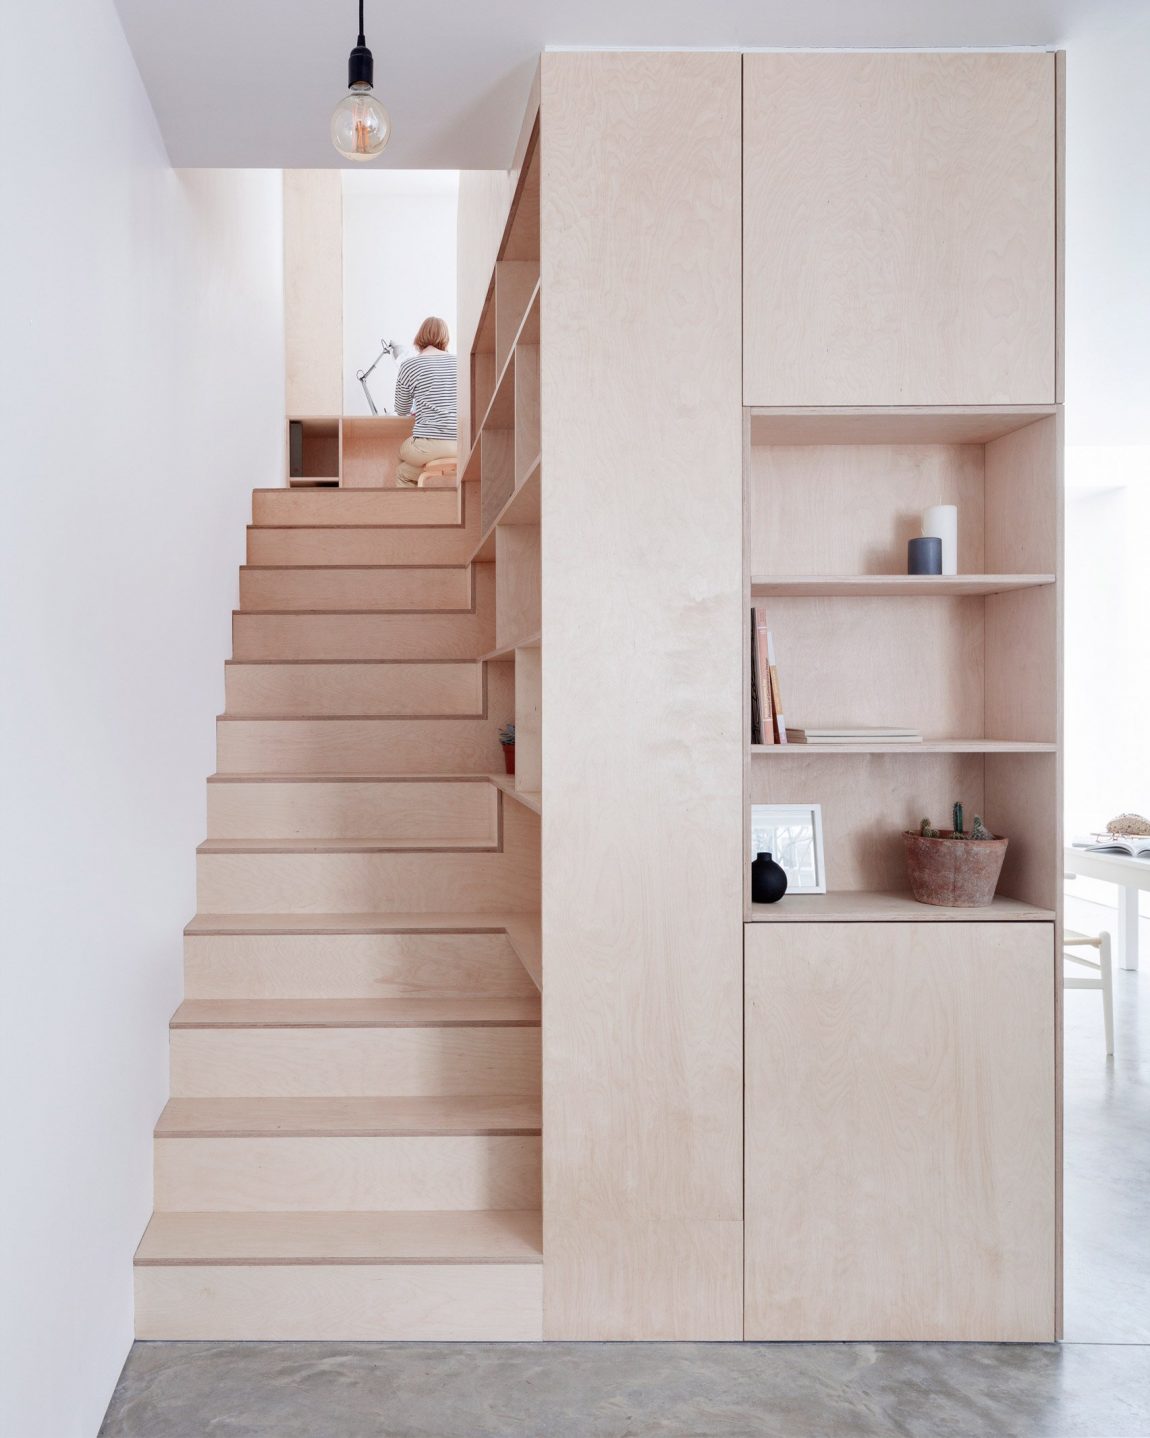 Deze grote multiplex boekenkast bij trap is onderdeel van een inspirerend project door architect Larissa Johnston.